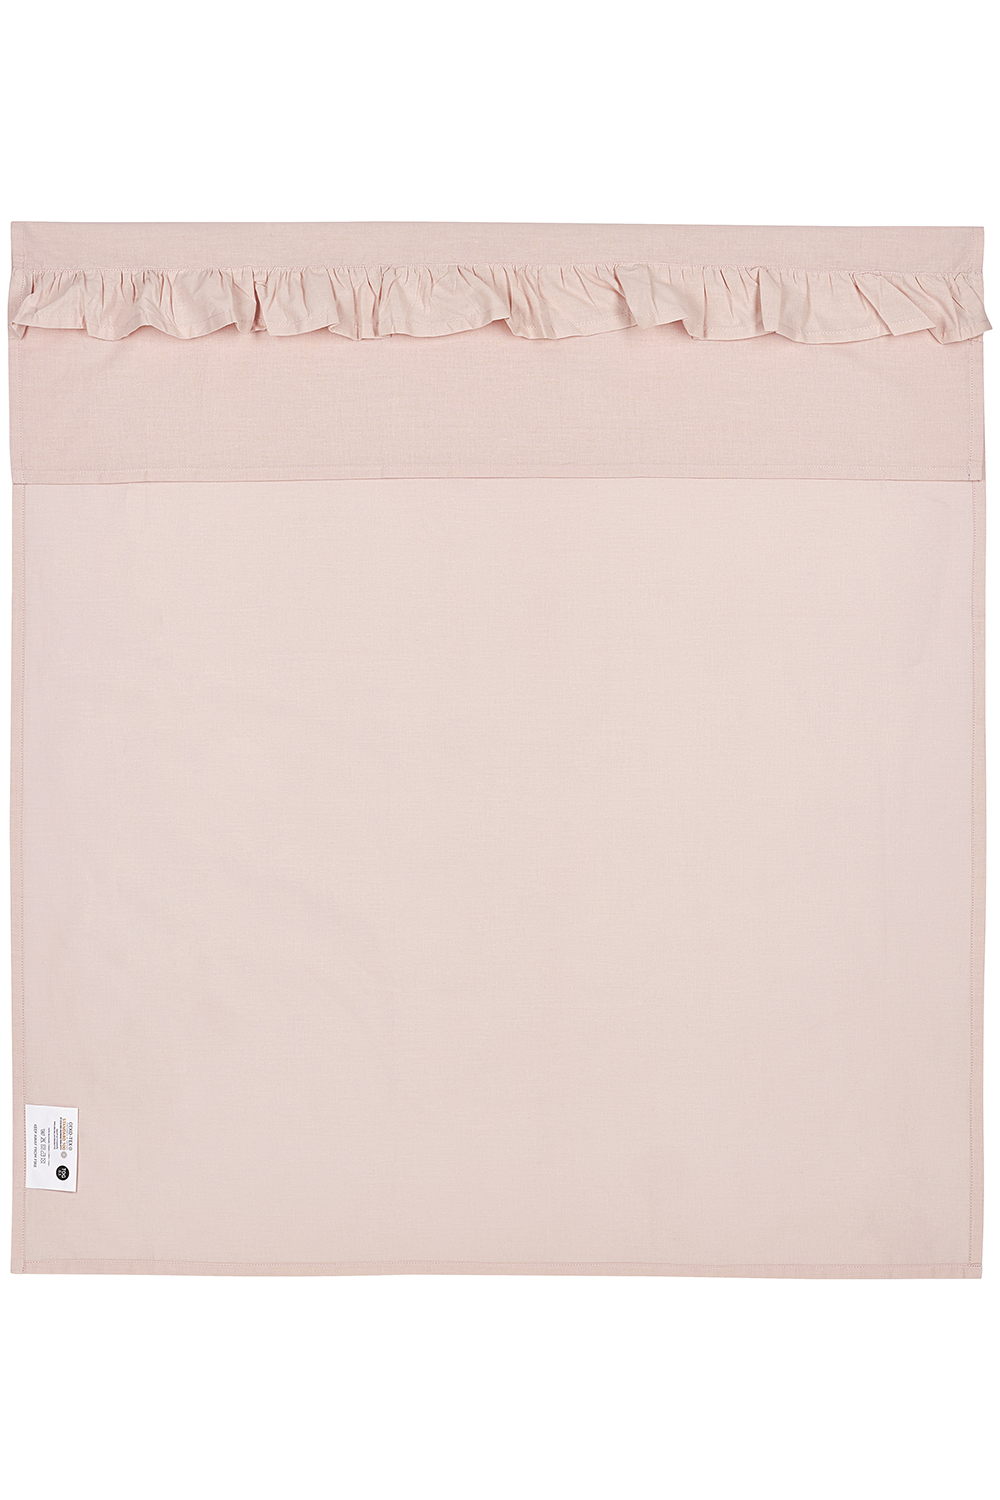 Wieglaken Ruffle - soft pink - 75x100cm